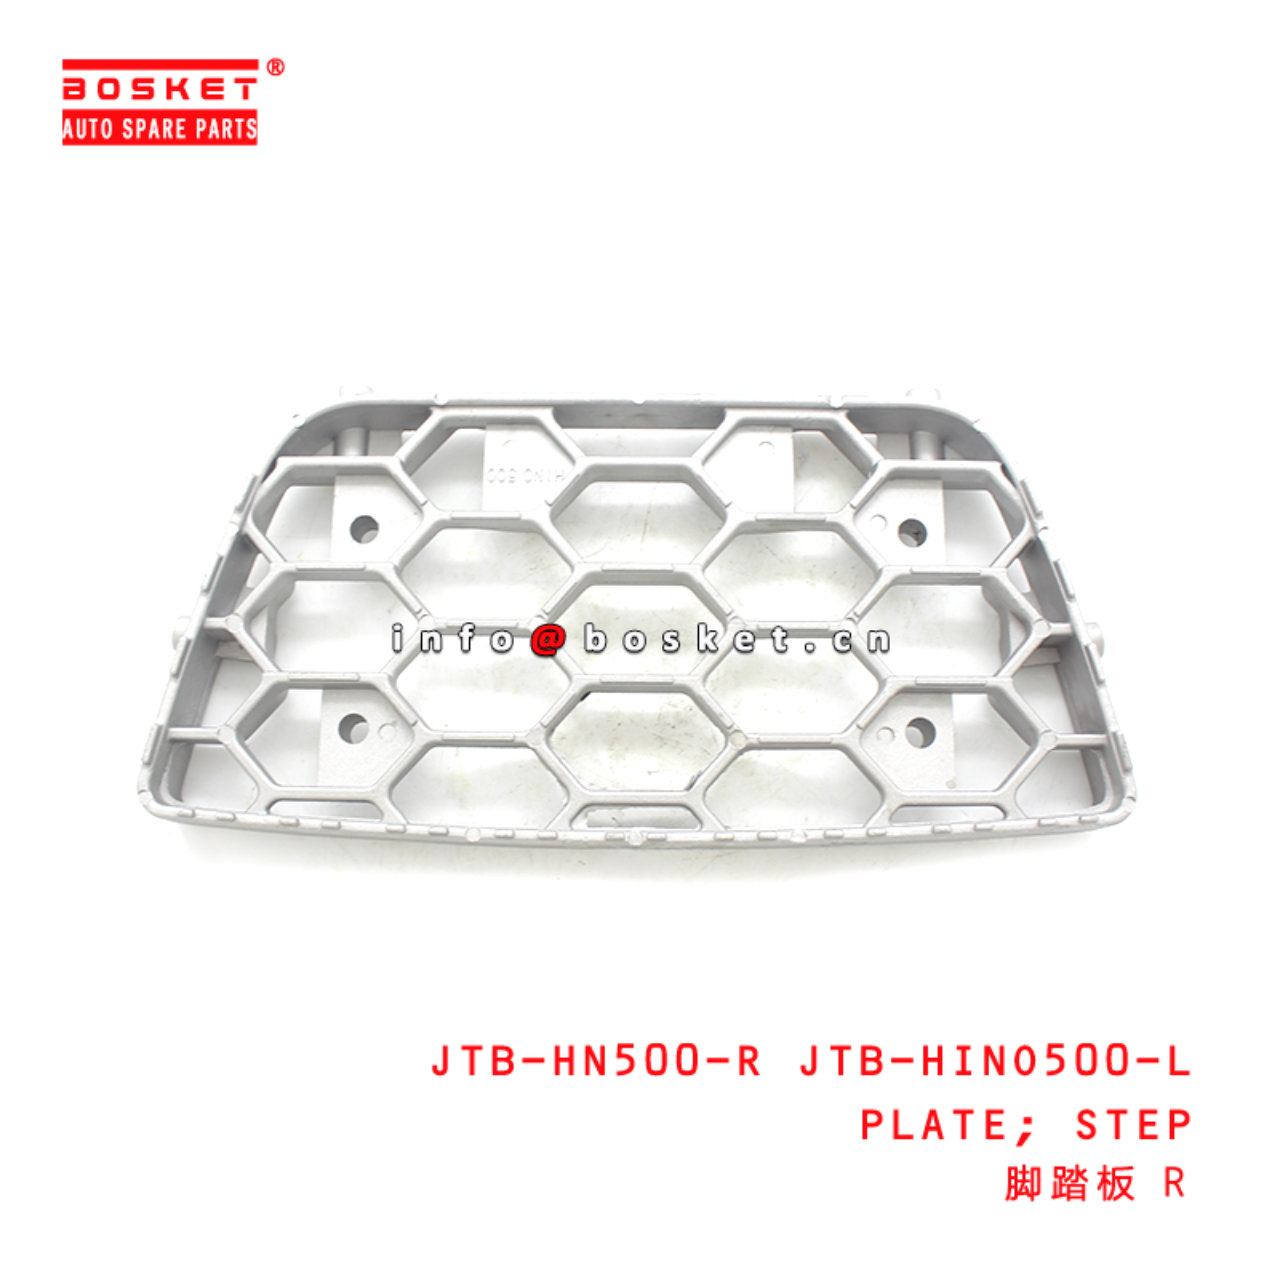 JTB-HN500-R JTB-HINO500-L Step Plate Suitable for ISUZU HINO 500